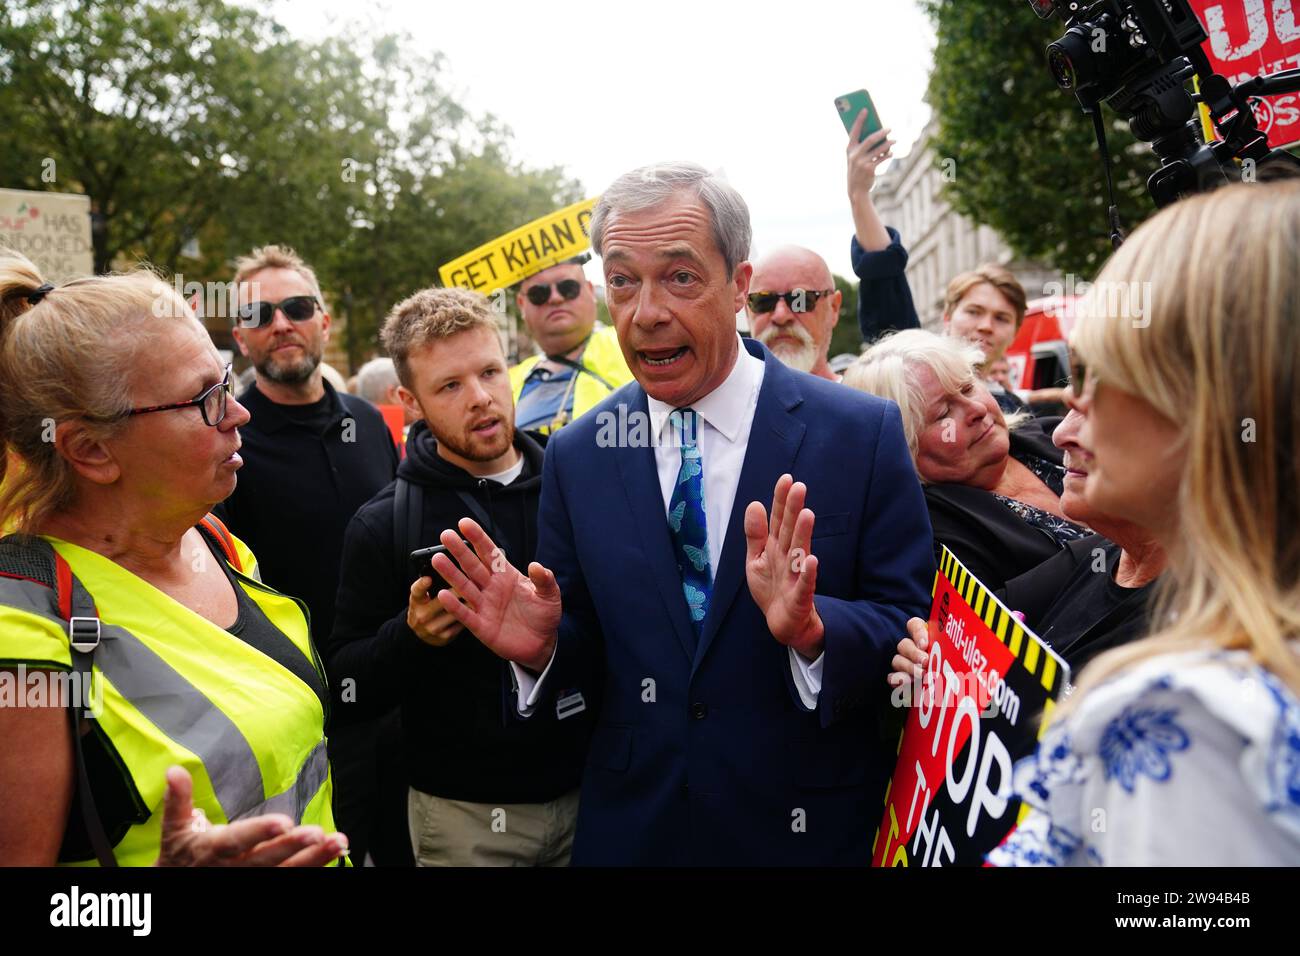 Foto del file datata 29/08/23 di Nigel Farage che parla con i manifestanti fuori Downing Street nel centro di Londra, il primo giorno dell'espansione della zona a bassissima emissione (Ulez) per includere l'intera Londra. Le regole bancarie del Regno Unito sono nel bel mezzo di una scossa dopo un anno turbolento che ha visto l'ex leader dell'UKIP Nigel Farage scatenare una crisi in una delle più grandi banche britanniche. La cosiddetta lotta al debanking ha portato a una repressione delle chiusure sleali dei conti dei clienti. Data di emissione: Domenica 24 dicembre 2023. Foto Stock